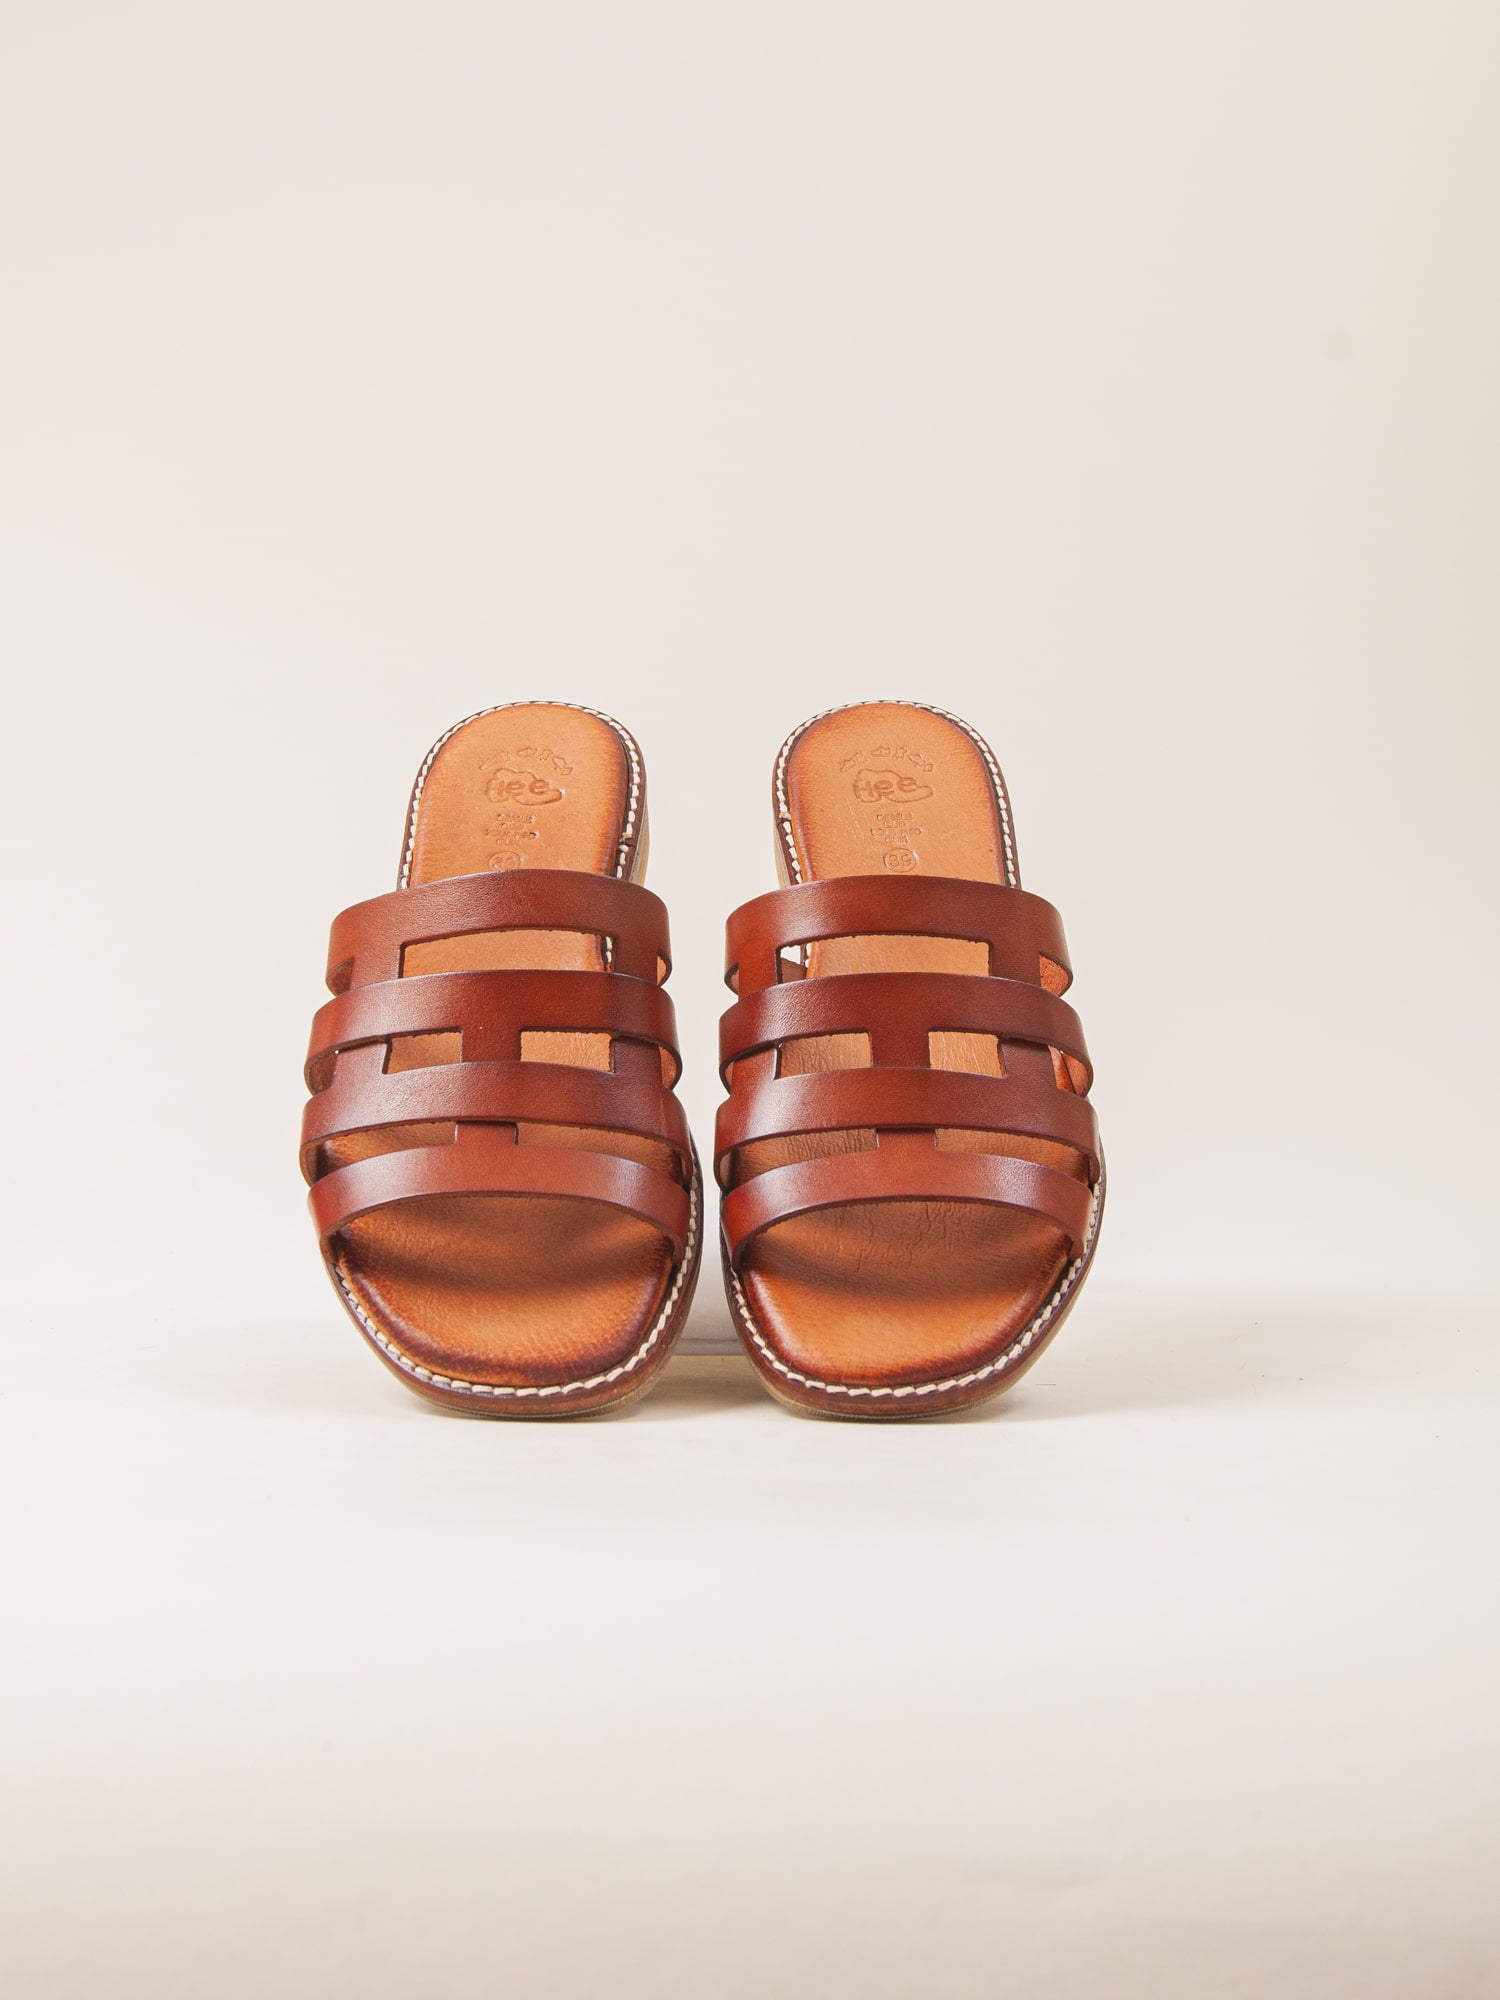 Sandalias planas de mujer cómodas y ligeras. Sandalias ideales para el verano.